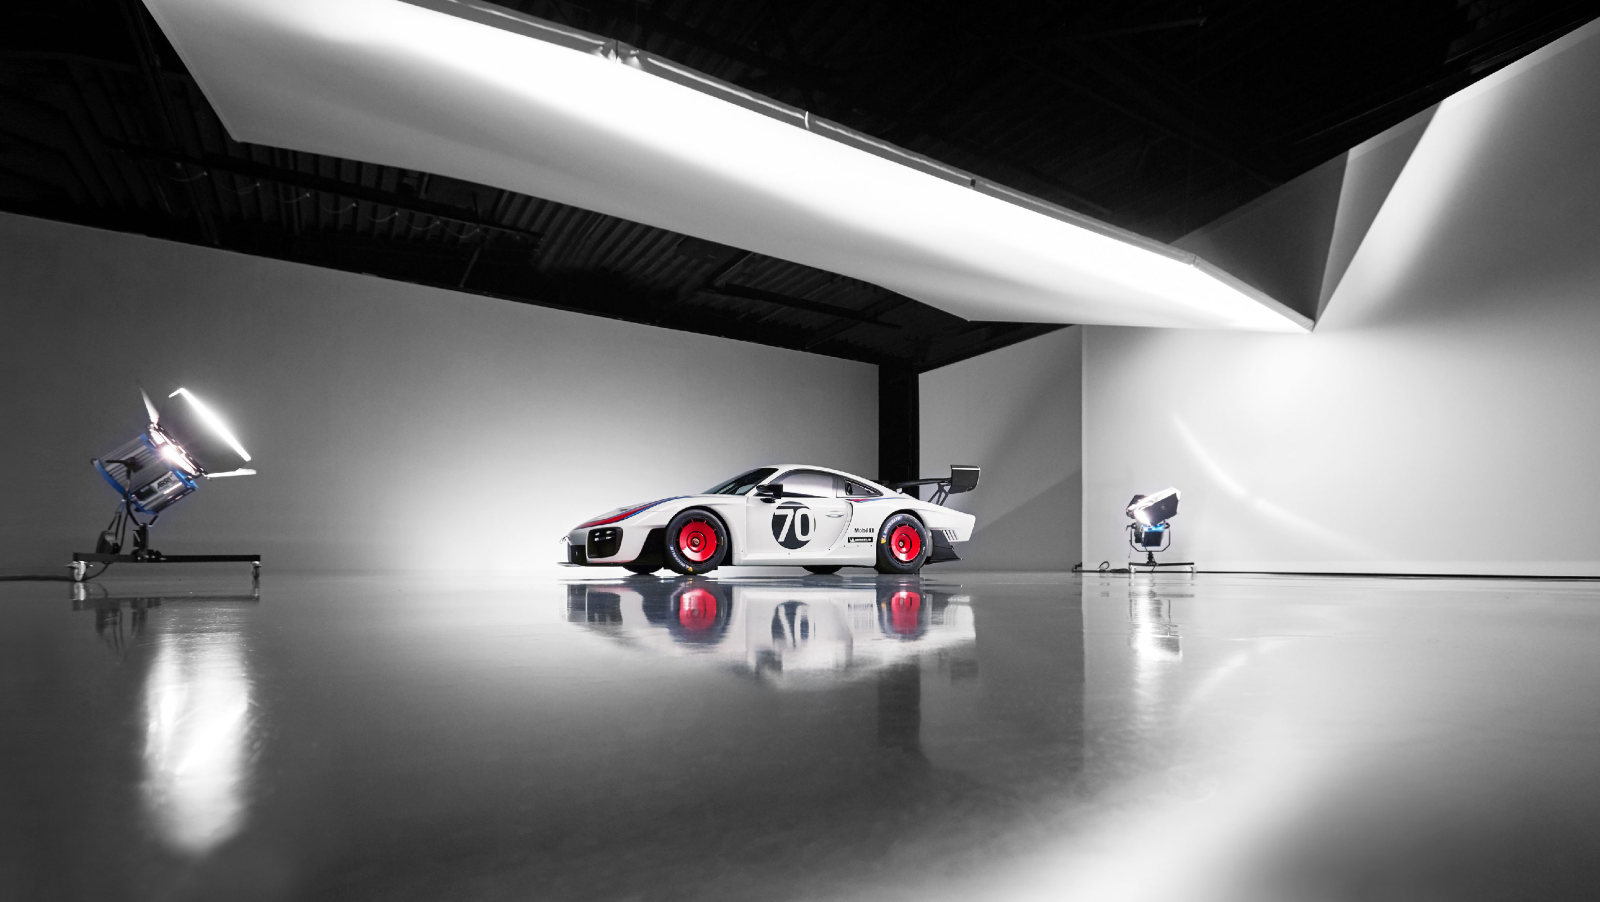 Porsche 935 2019